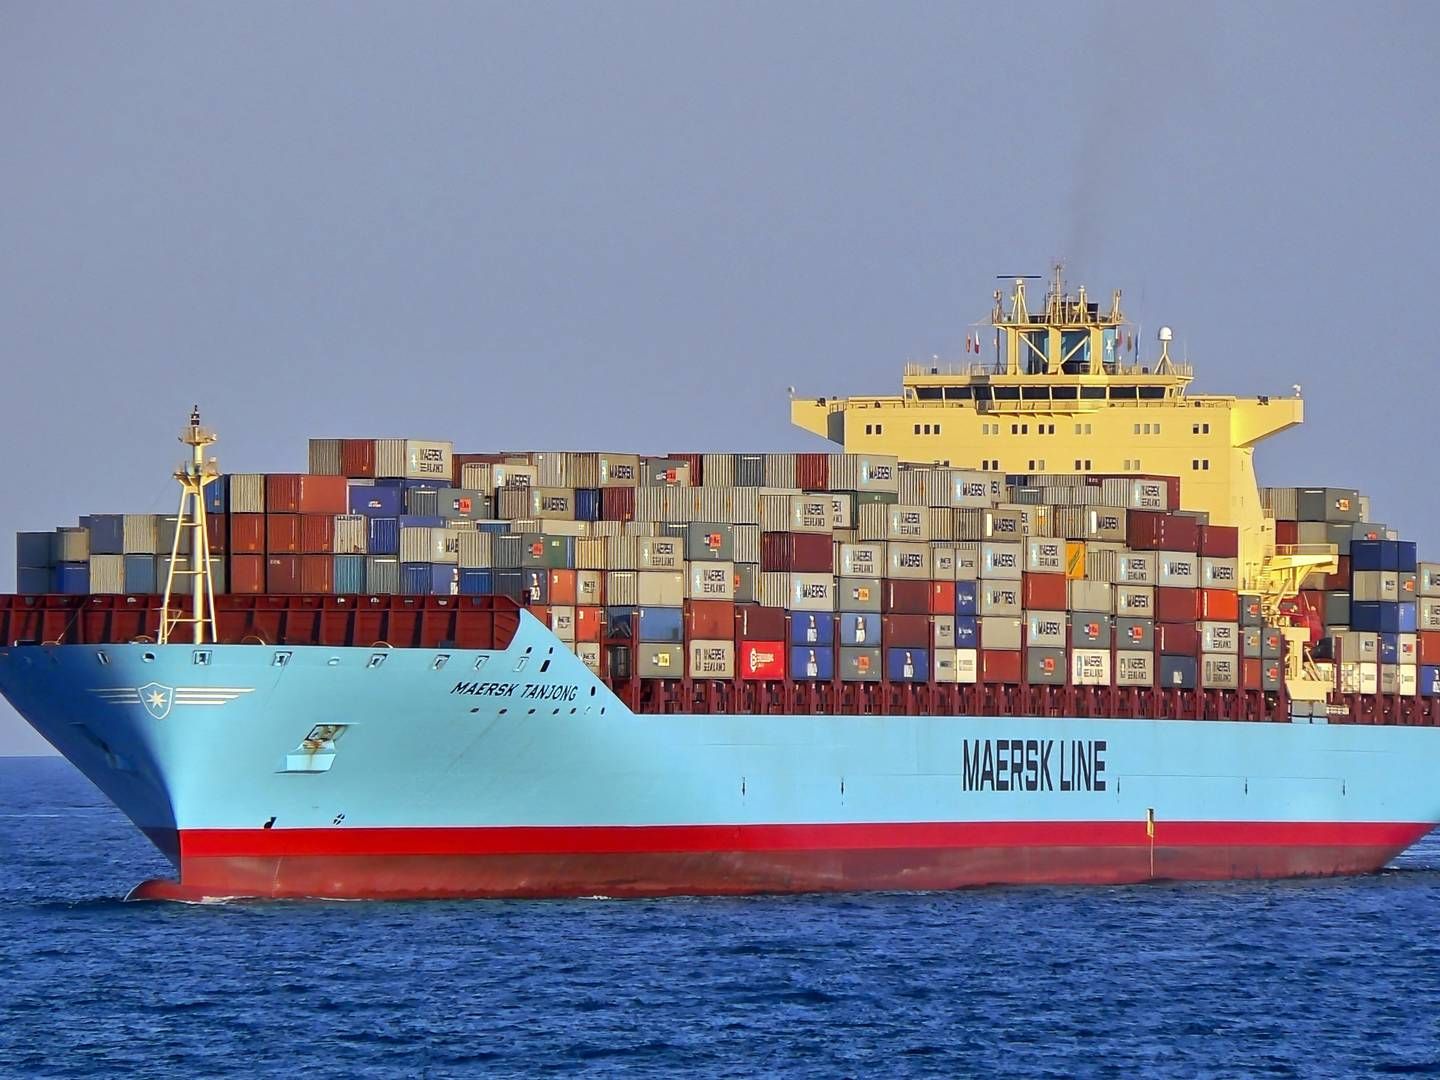 Mærsk og andre containerrederier har indført uigennemsigtige ekstragebyrer i kølvandet på krisen i Det Røde Hav, påpeger OECD-organisation. | Foto: Manuel Hernandez/Reuters/Ritzau Scanpix